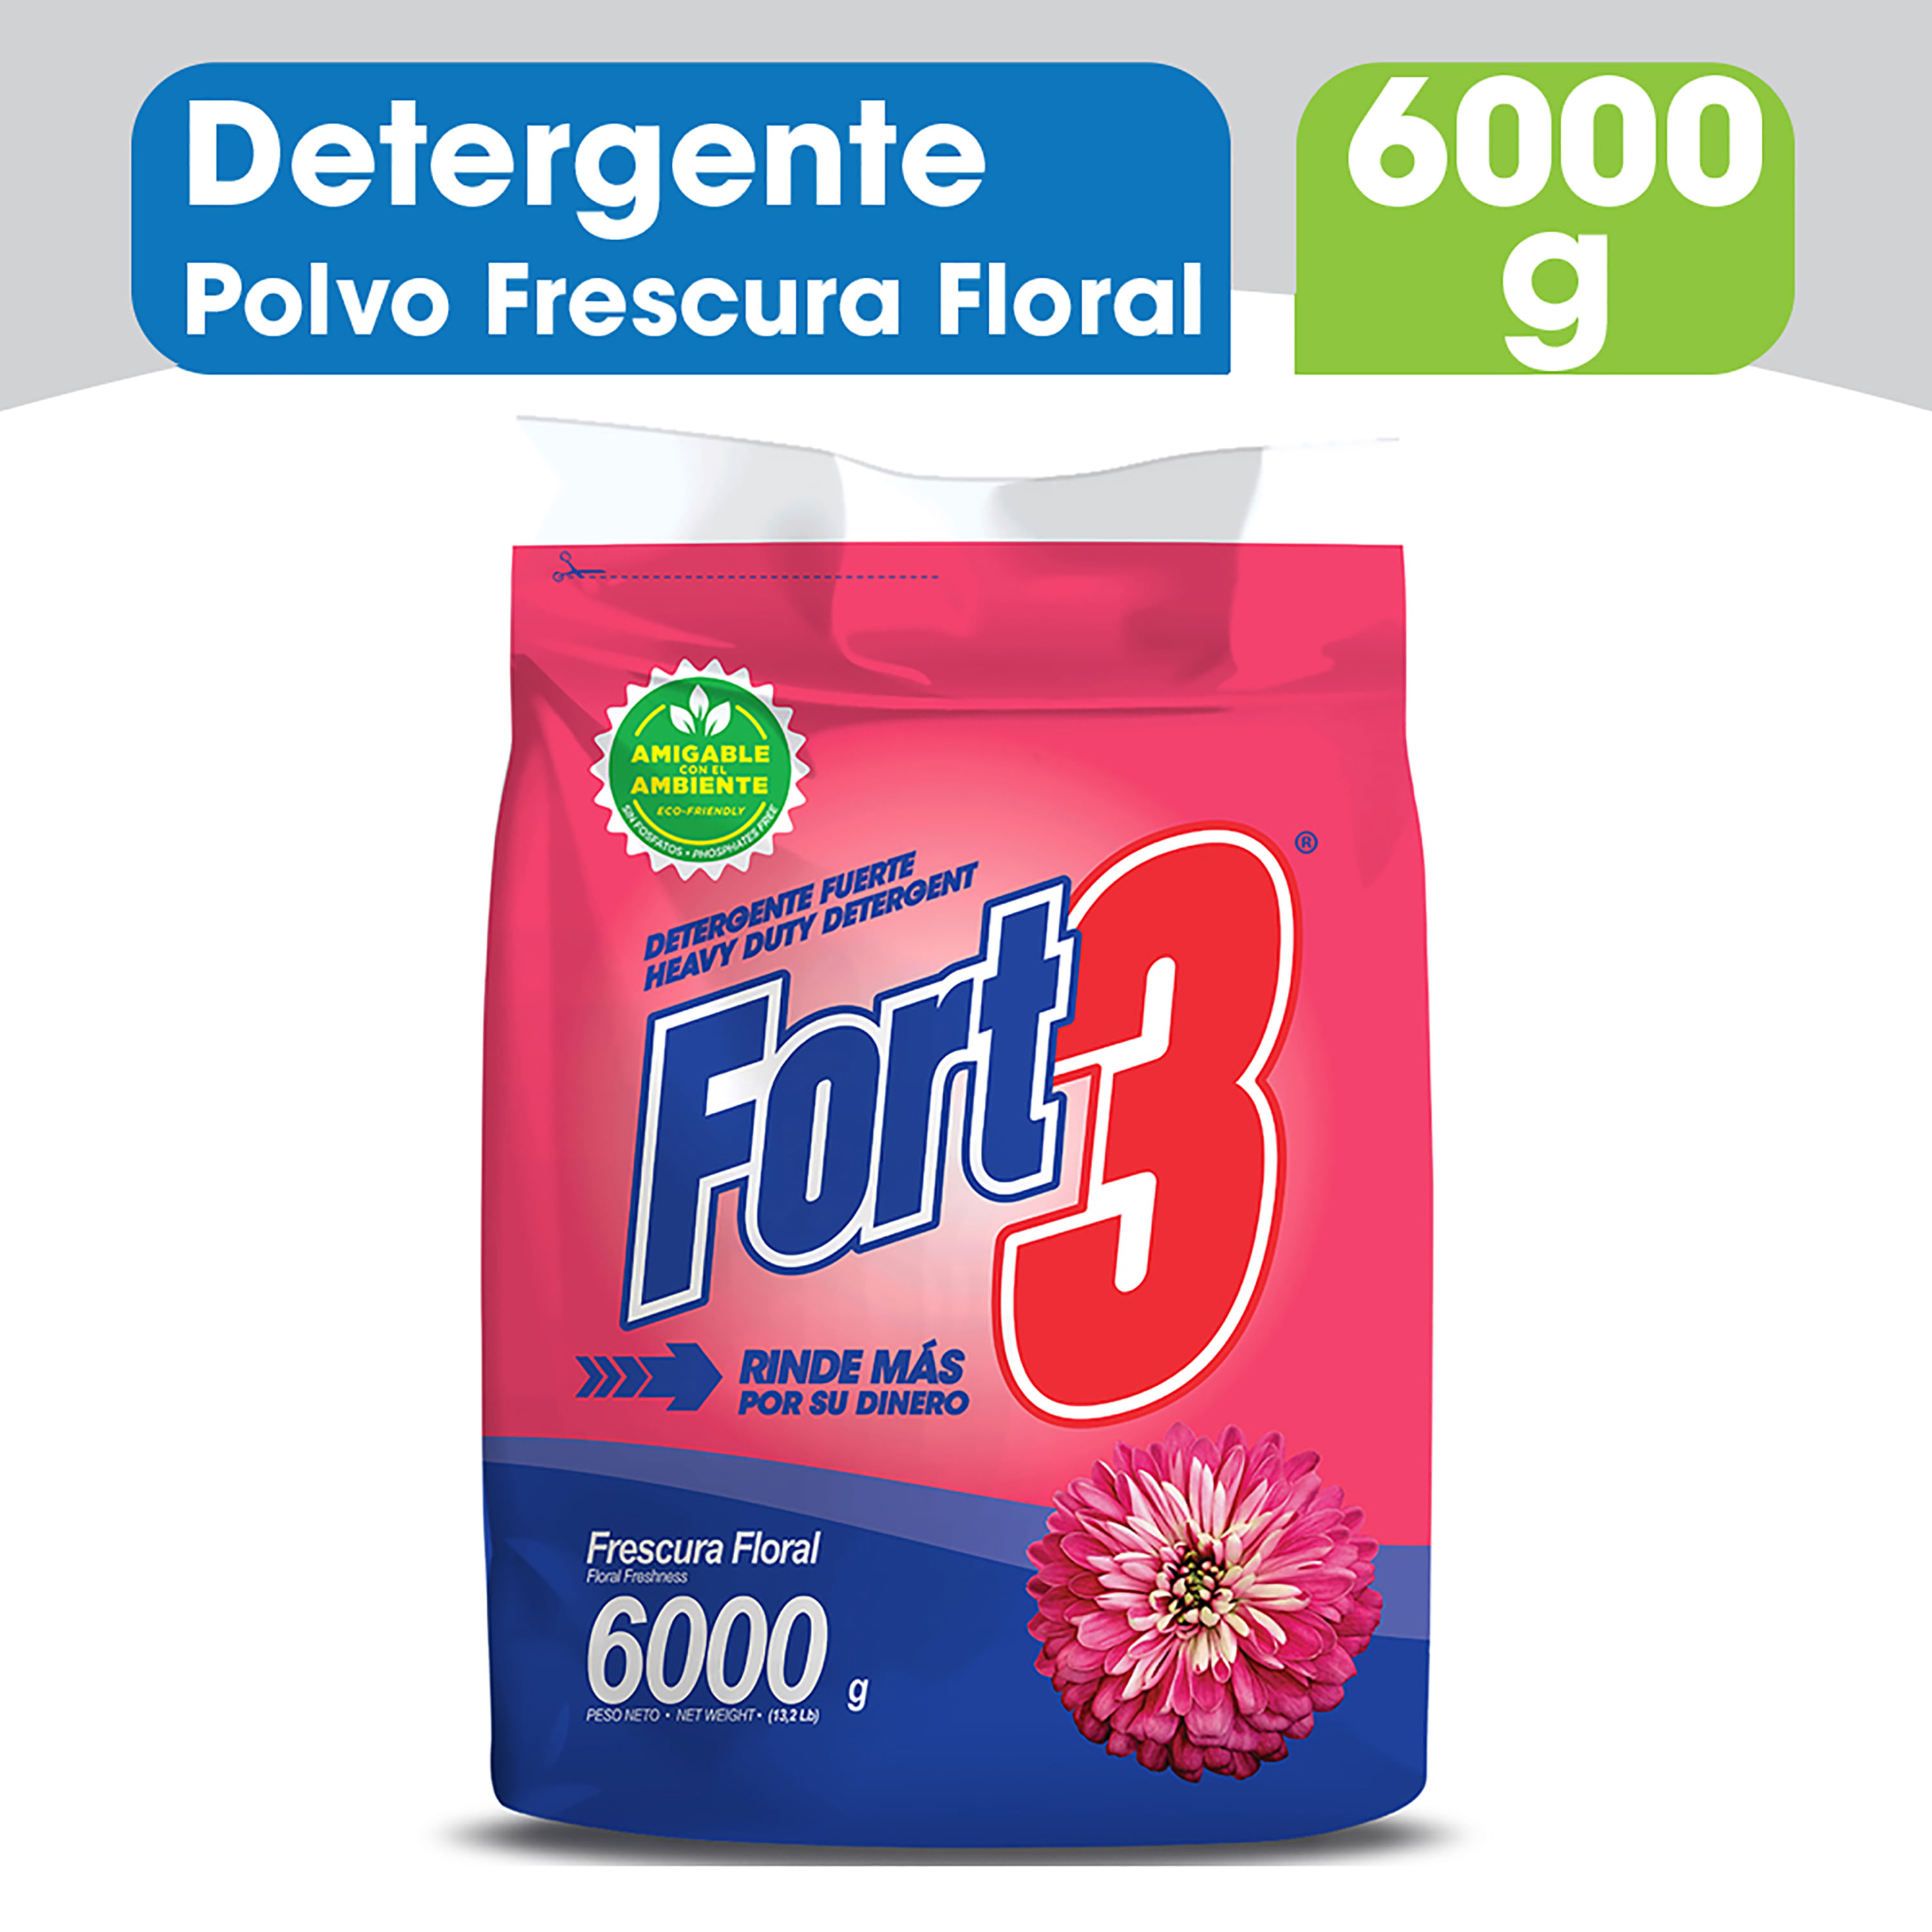 Detergente Polvo Fort3 Frescura Floral - 6000g